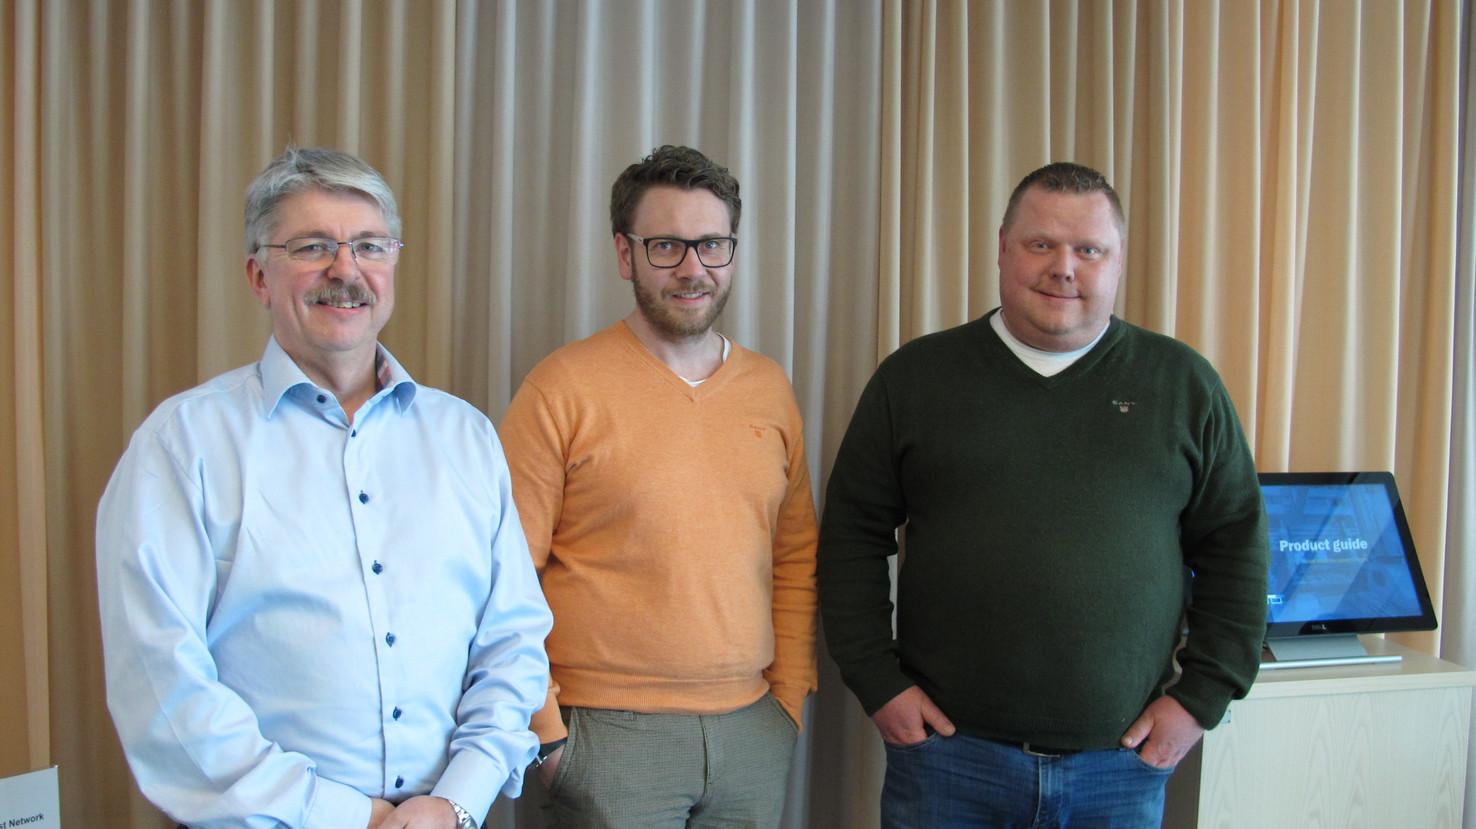 图片说明：新上任的三位销售经理Håkan Rydenborg、Andreas Silfversparre及Anders Högbom将有助于加强AP&T全球销售团队建设。